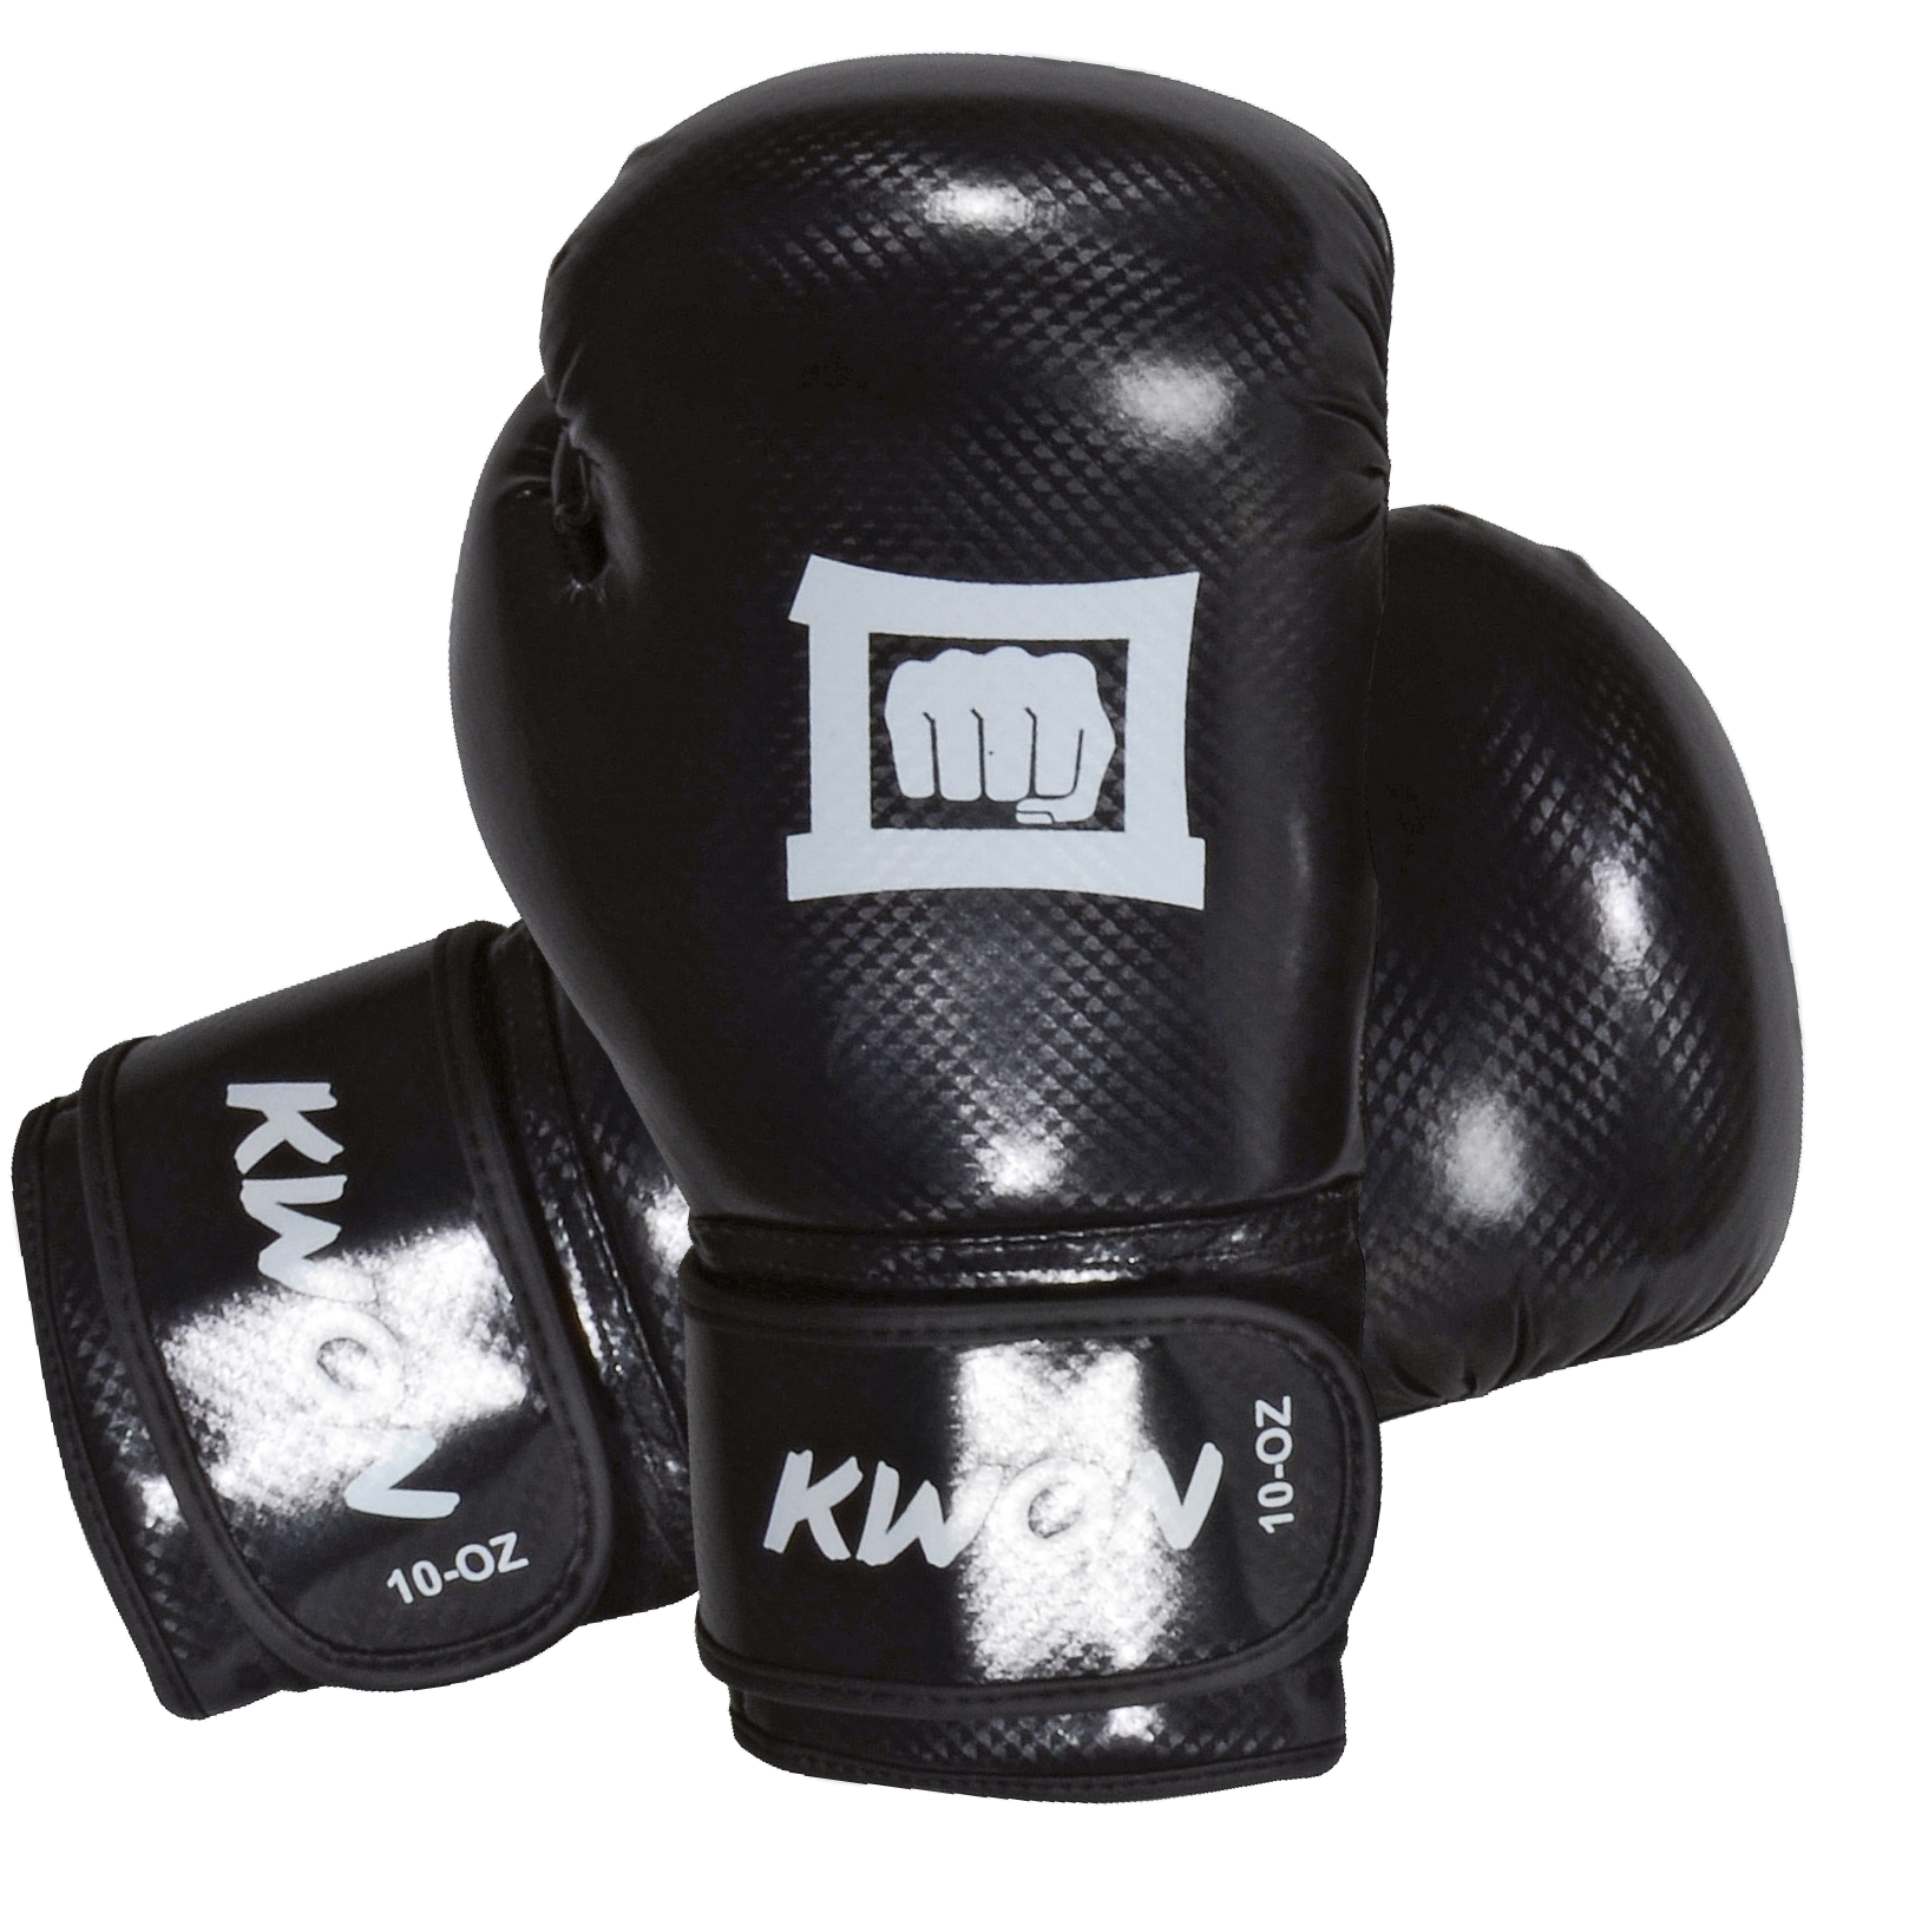 Kwon Fitness Refklekt Boxhandschuhe